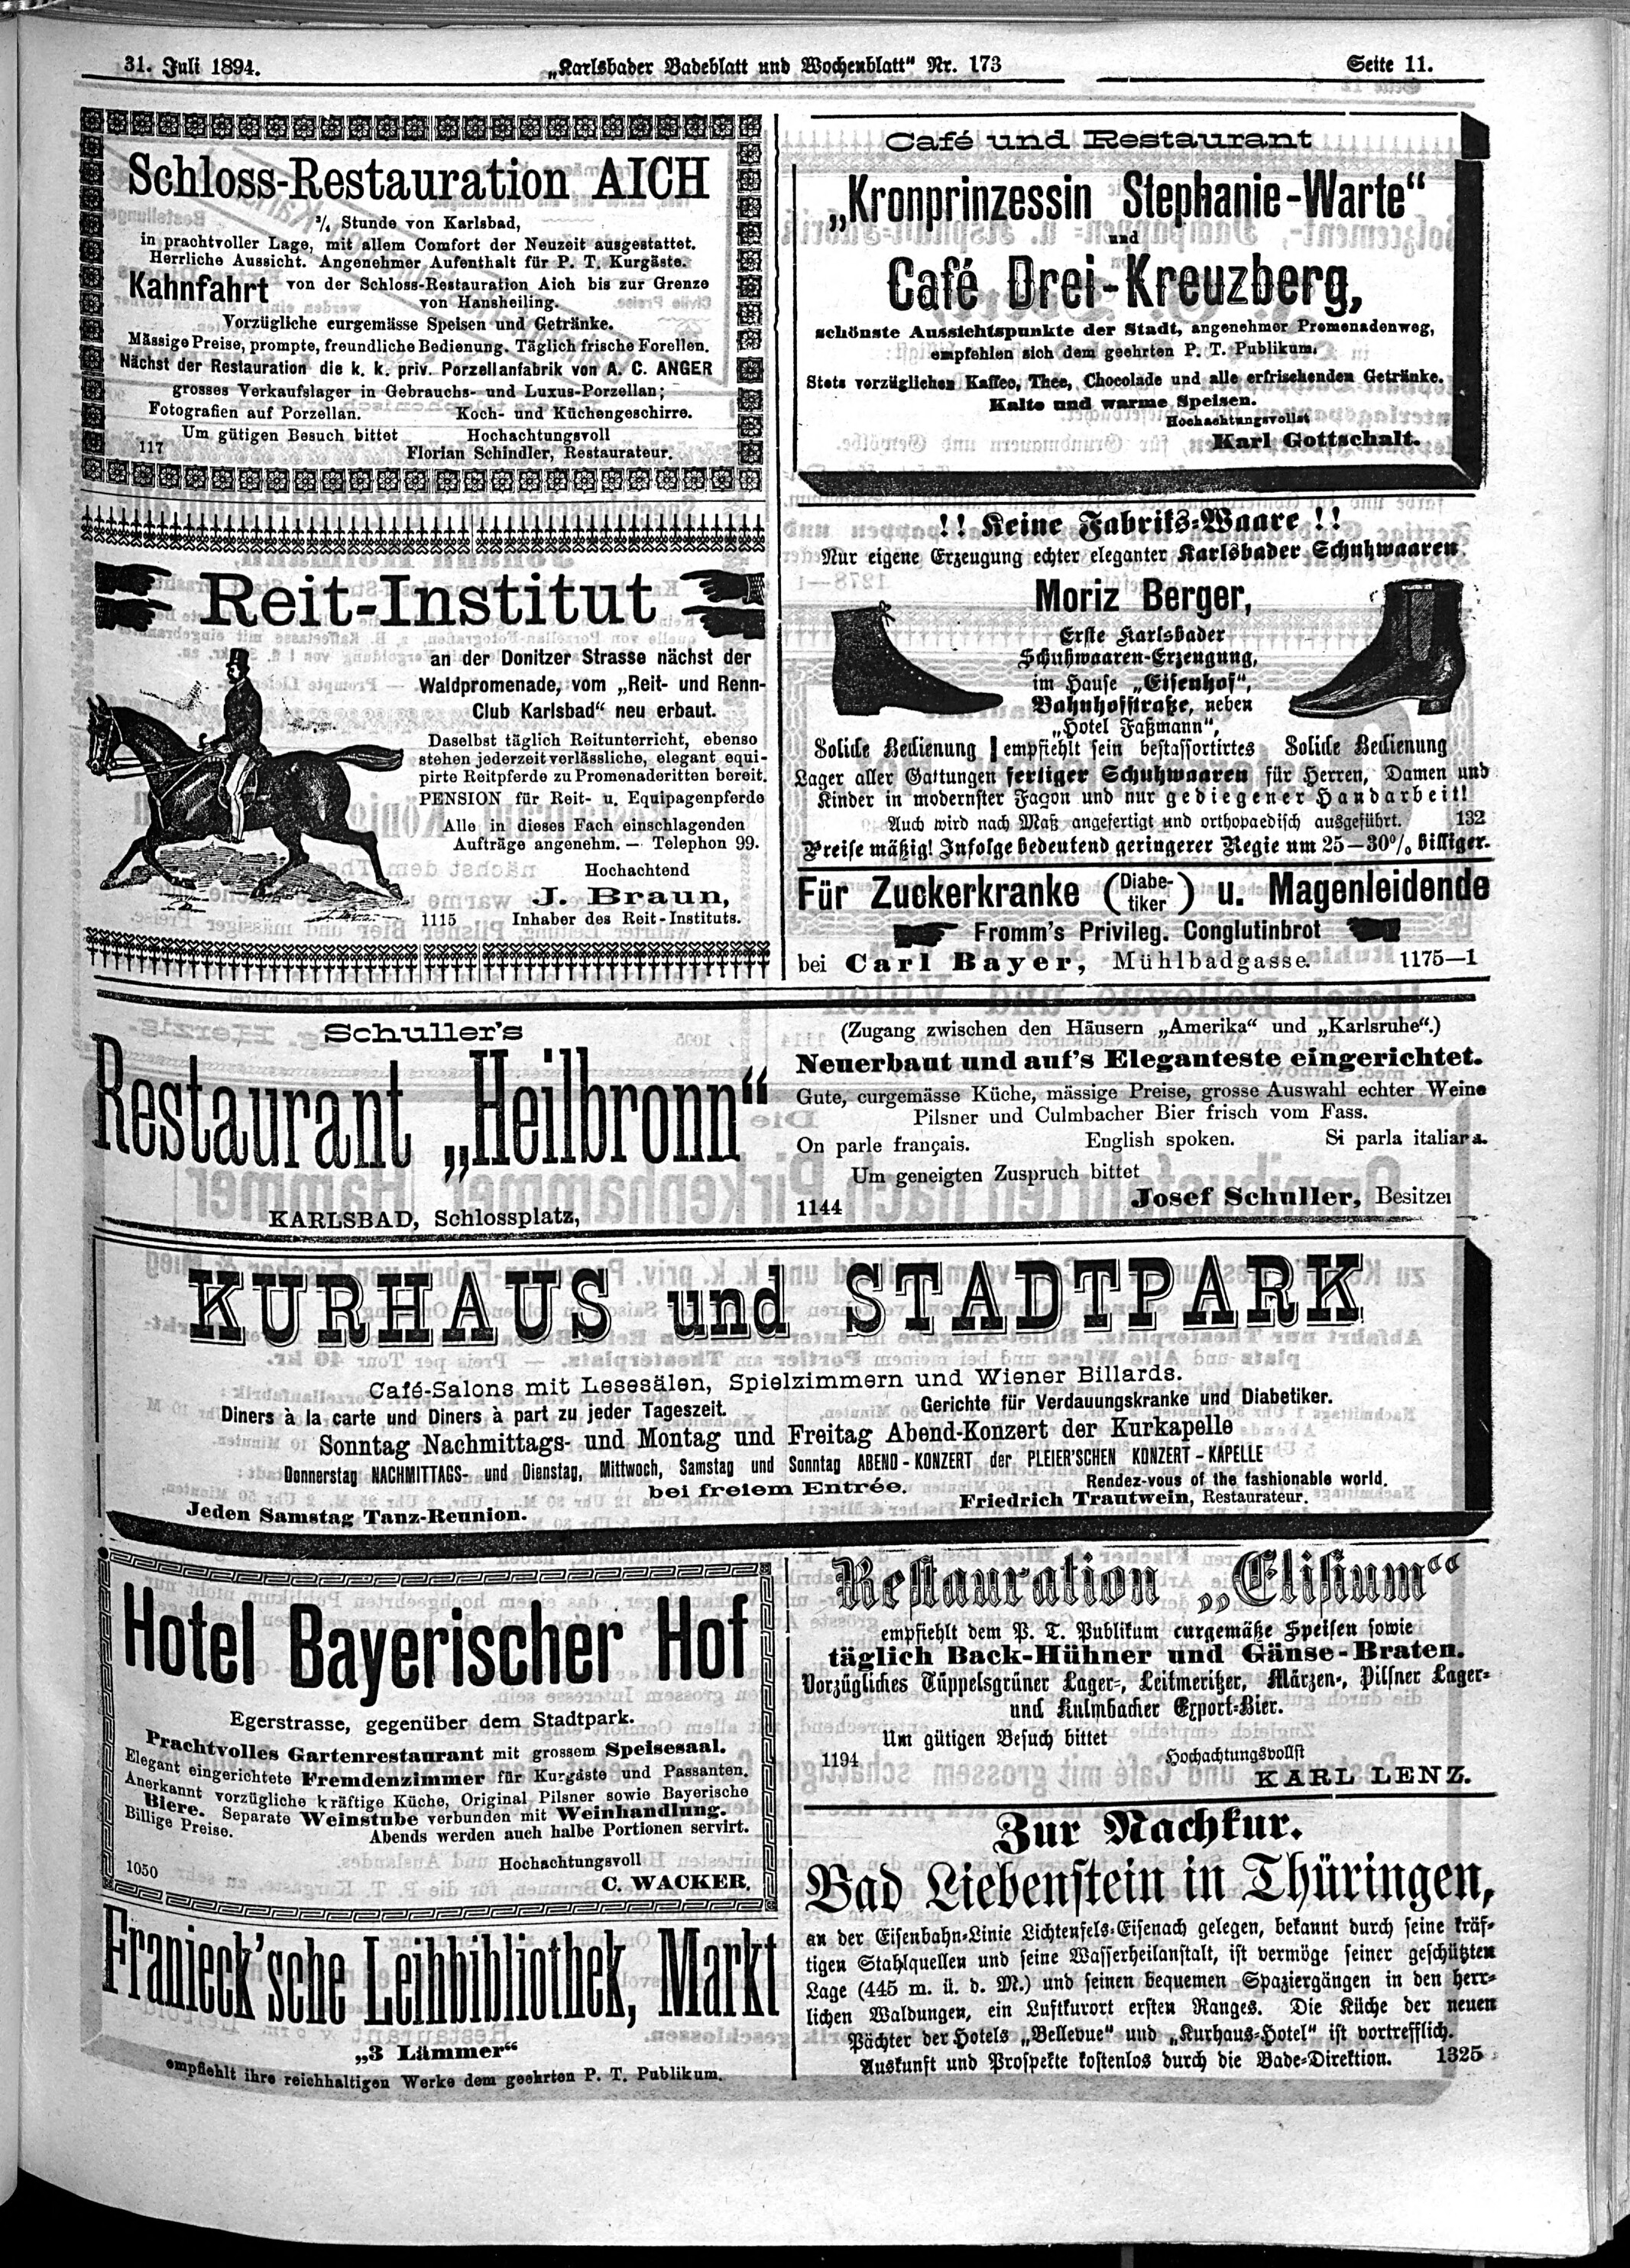 9. karlsbader-badeblatt-1894-07-31-n173_1235